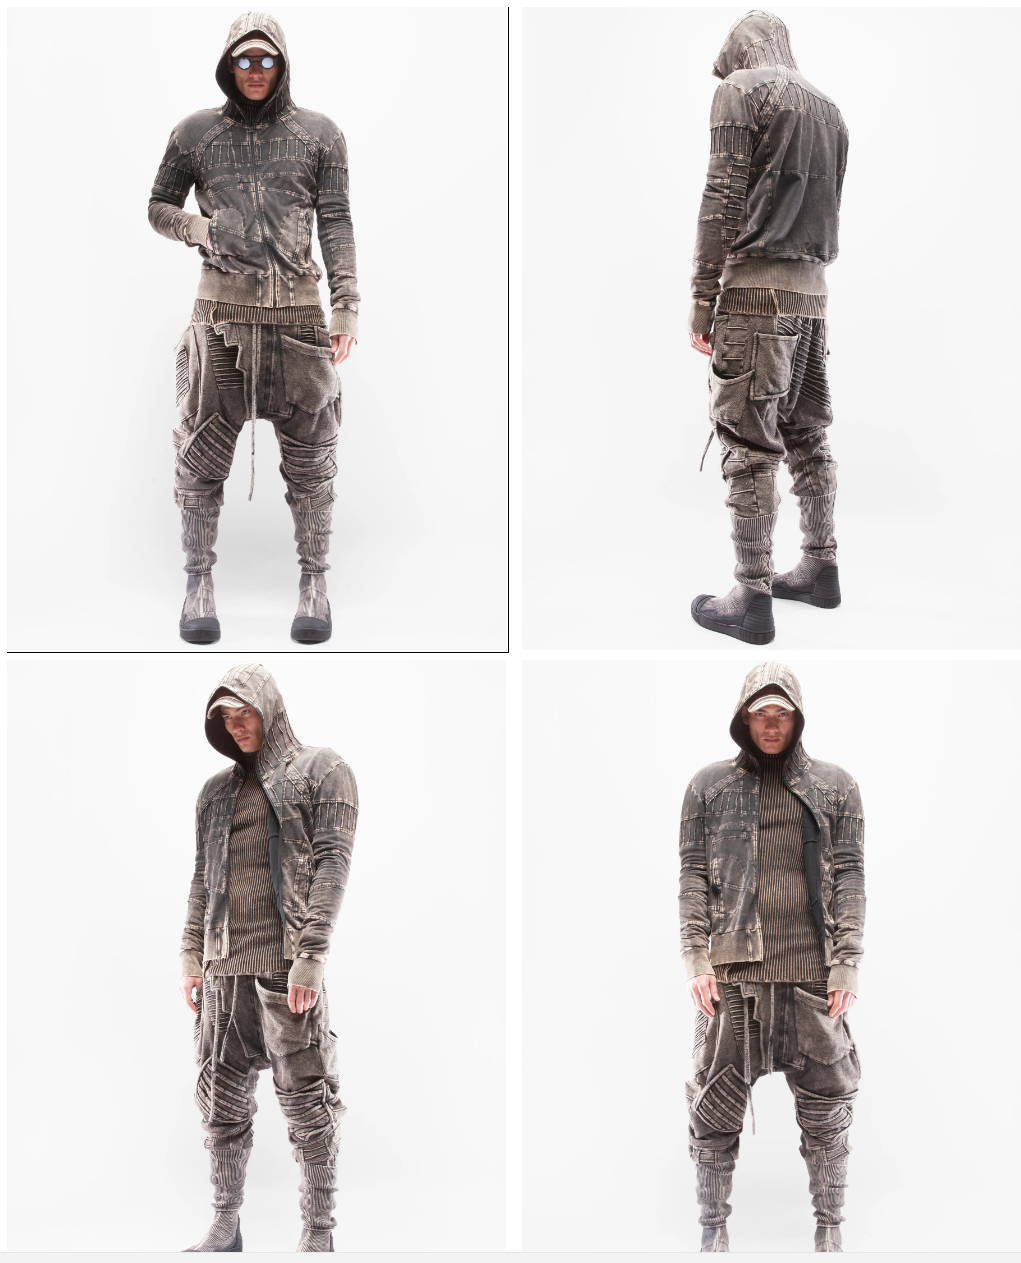 rugged, Nomad style clothing from Demobaza